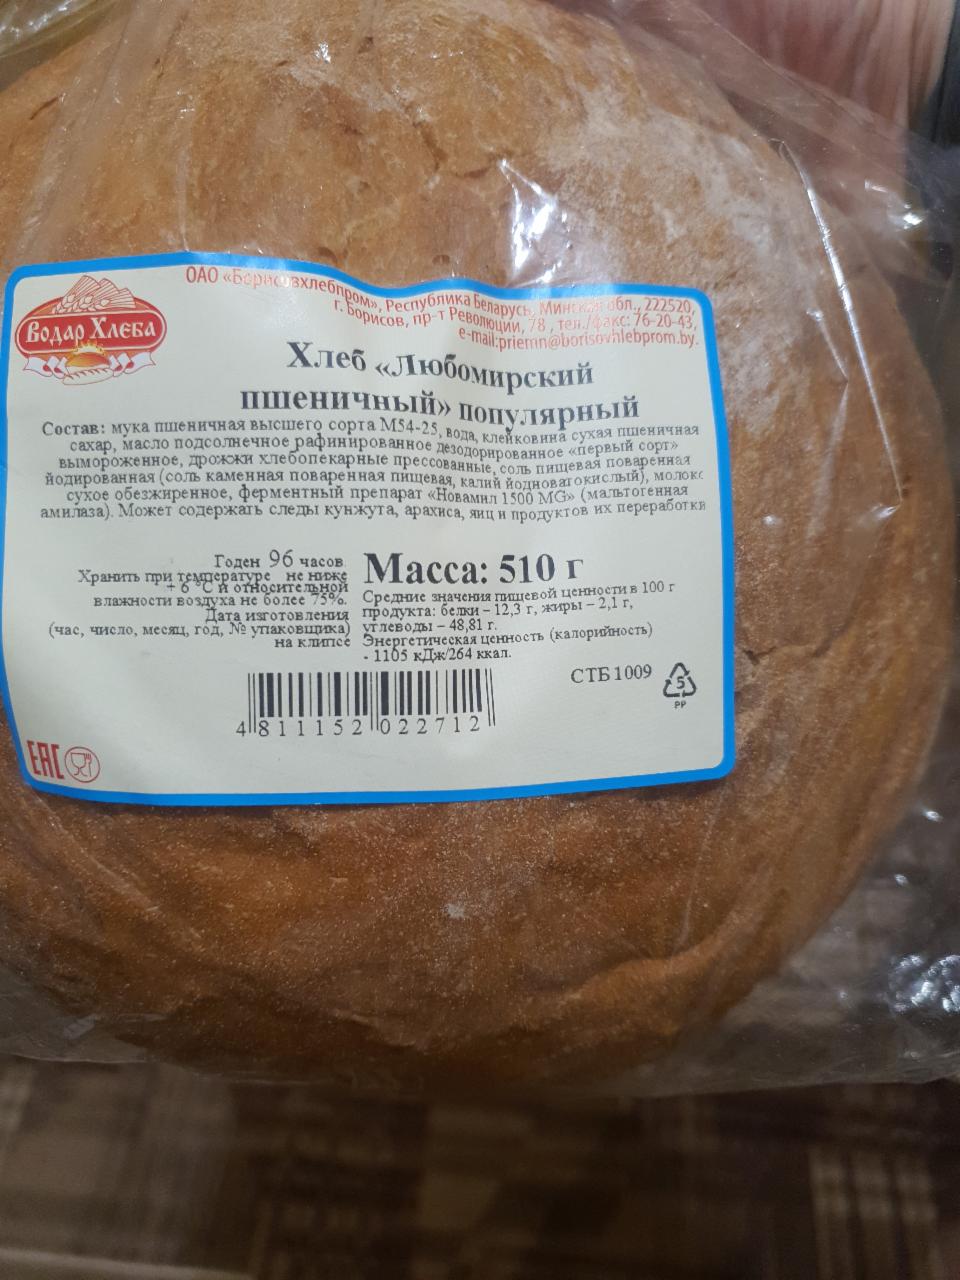 Фото - Хлеб Любомирский пшеничный популярный Водар хлеба